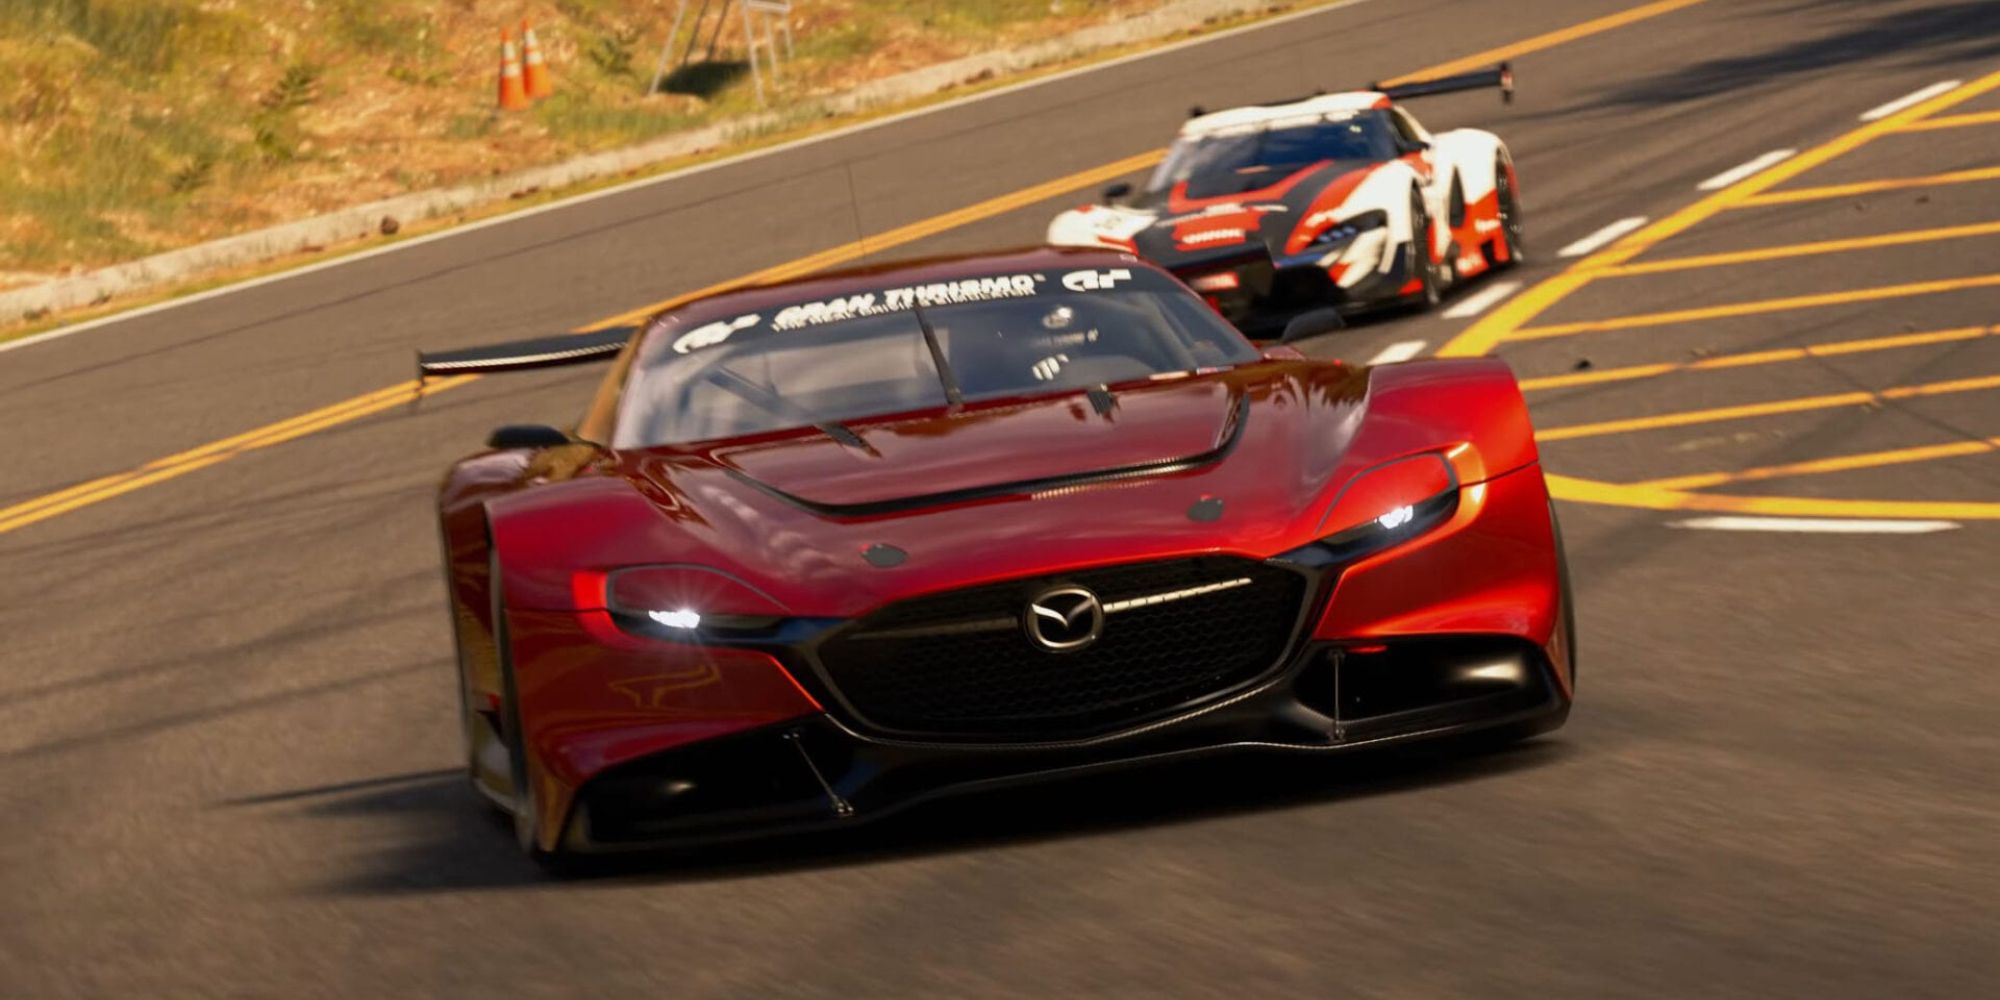 Two cars racing in Gran Turismo 7